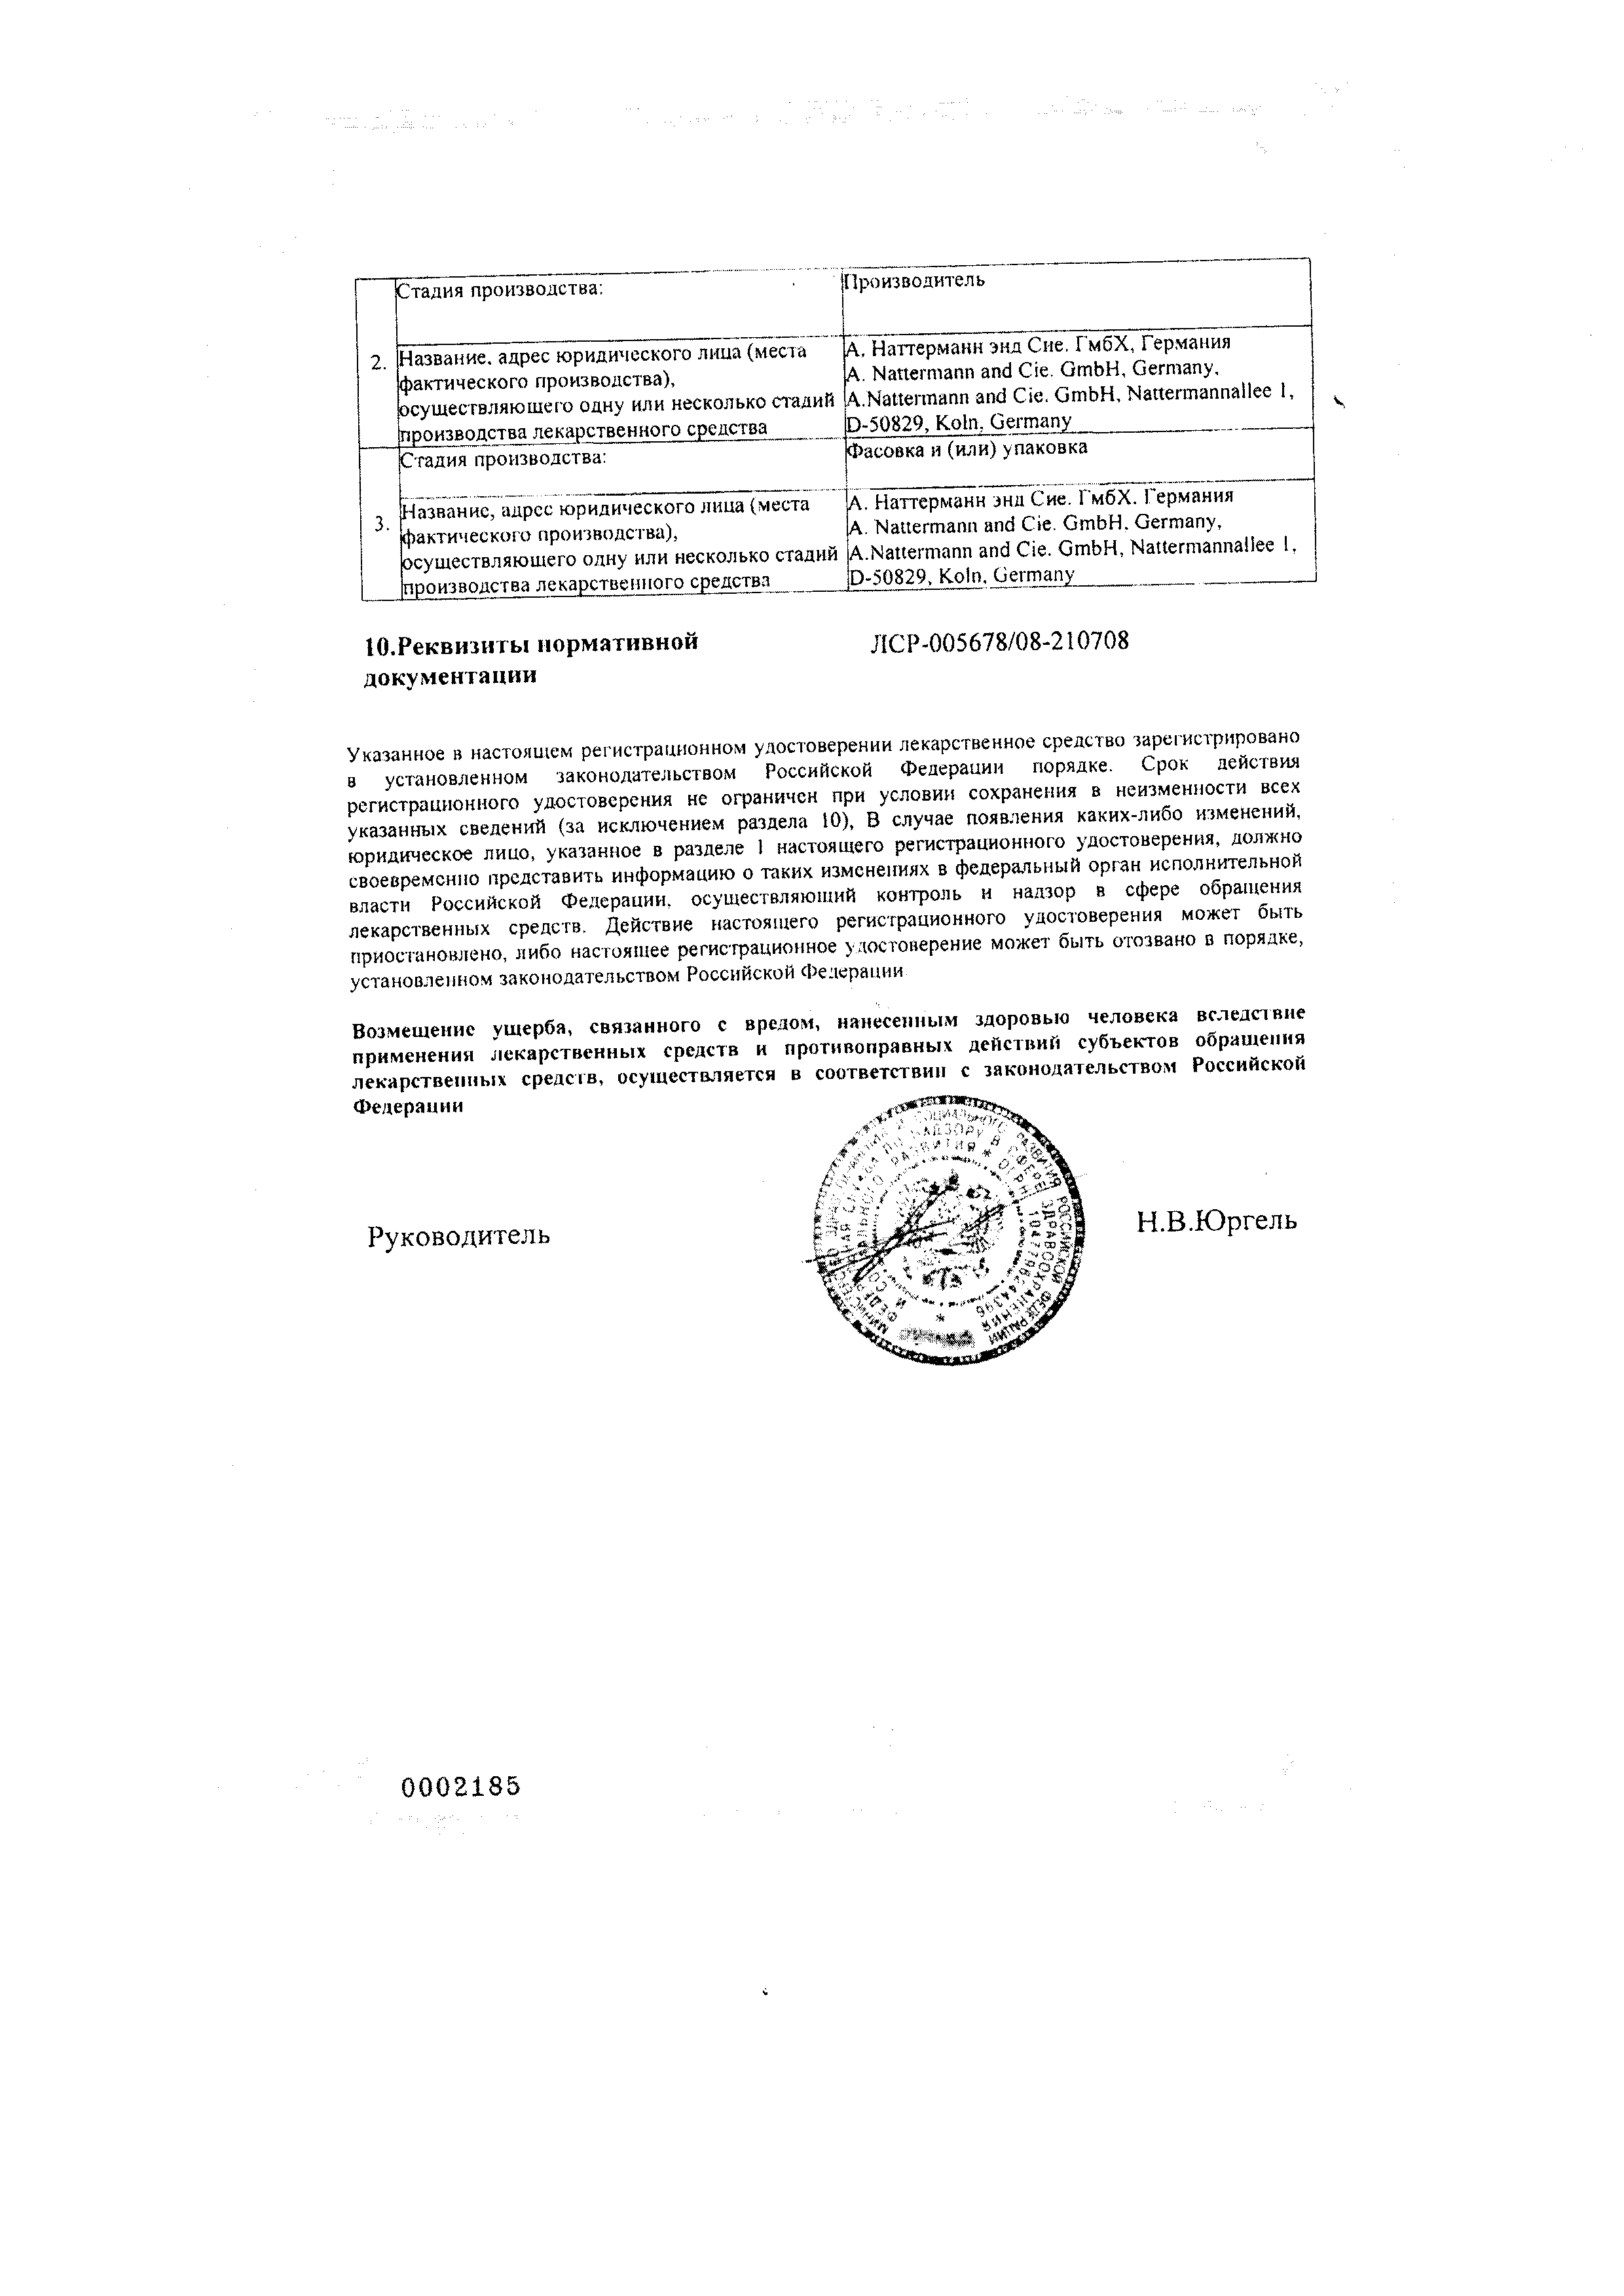 Бронхикум ТП сертификат